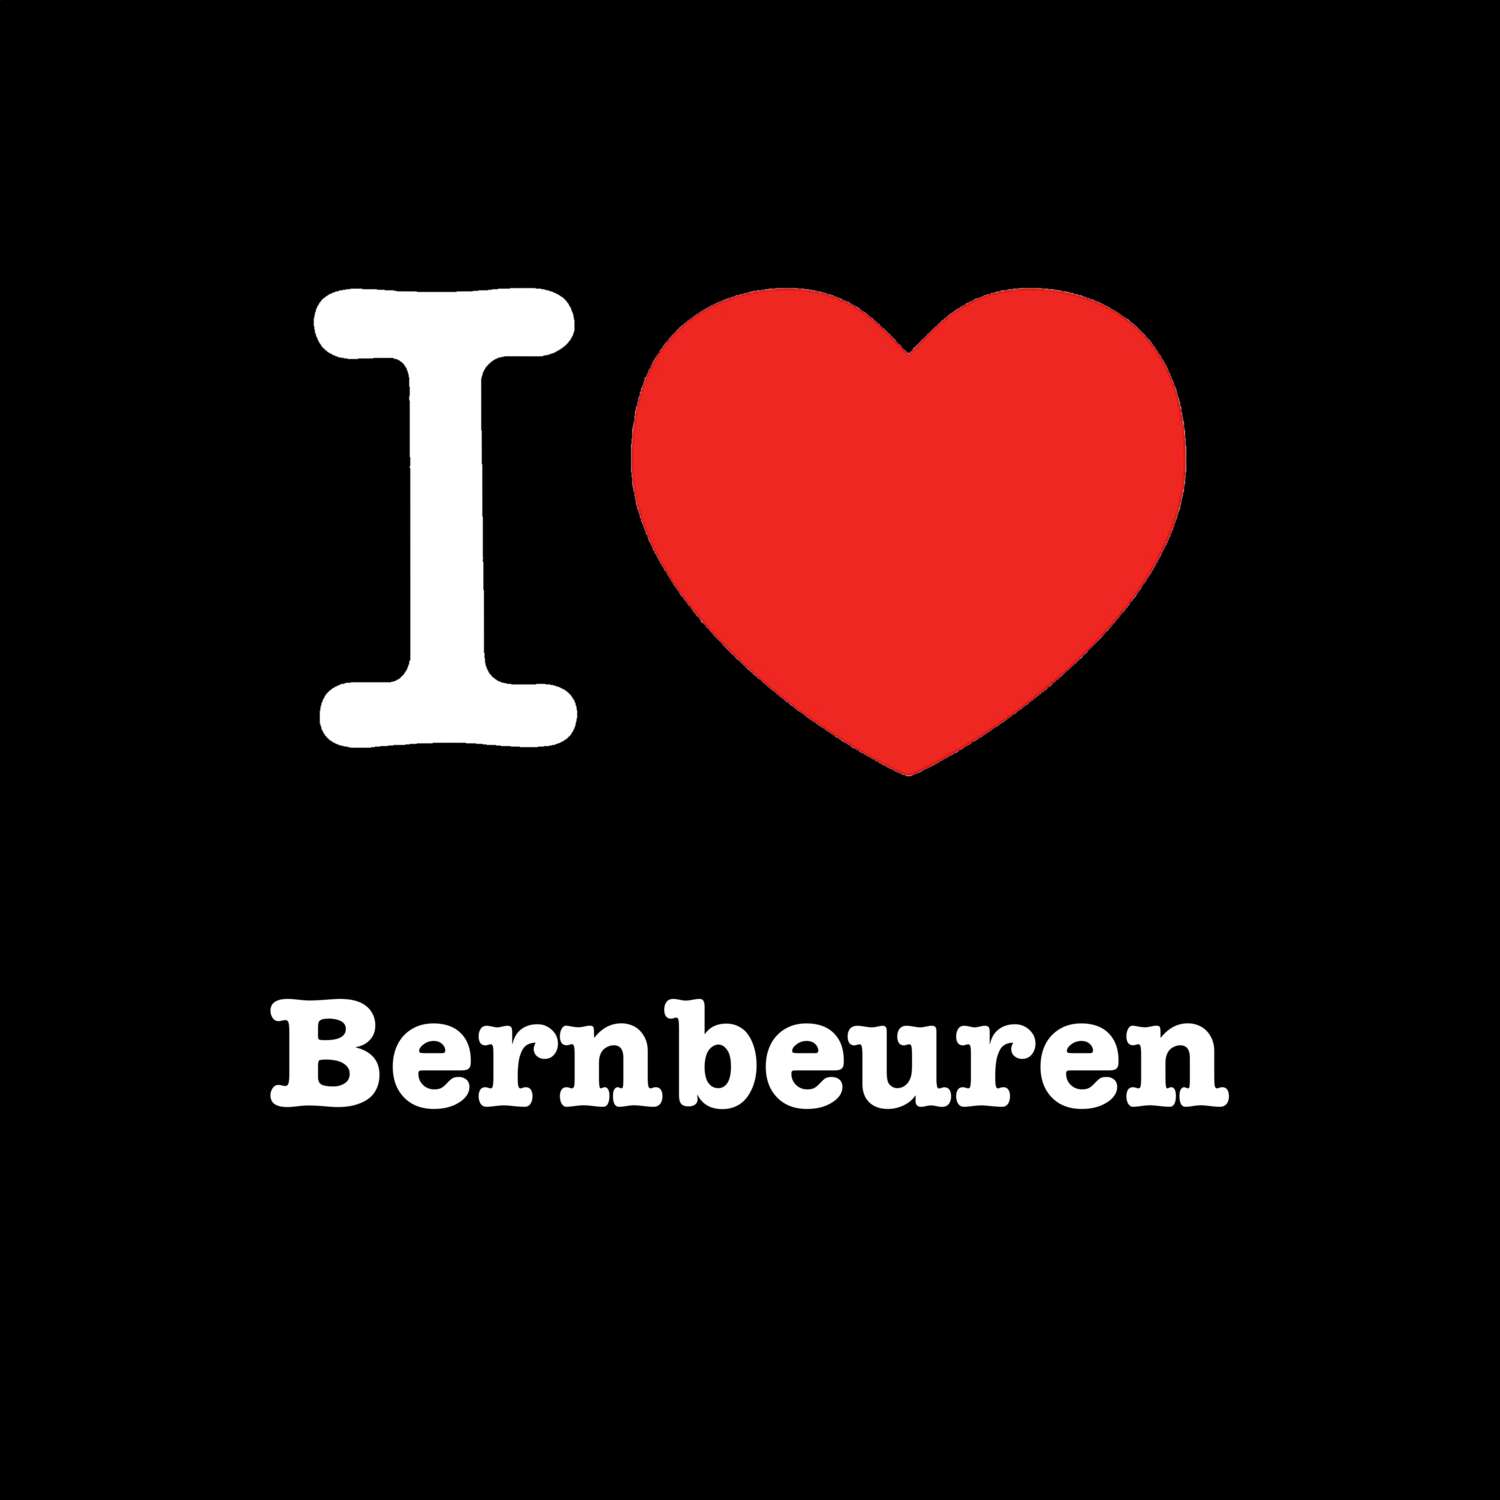 Bernbeuren T-Shirt »I love«